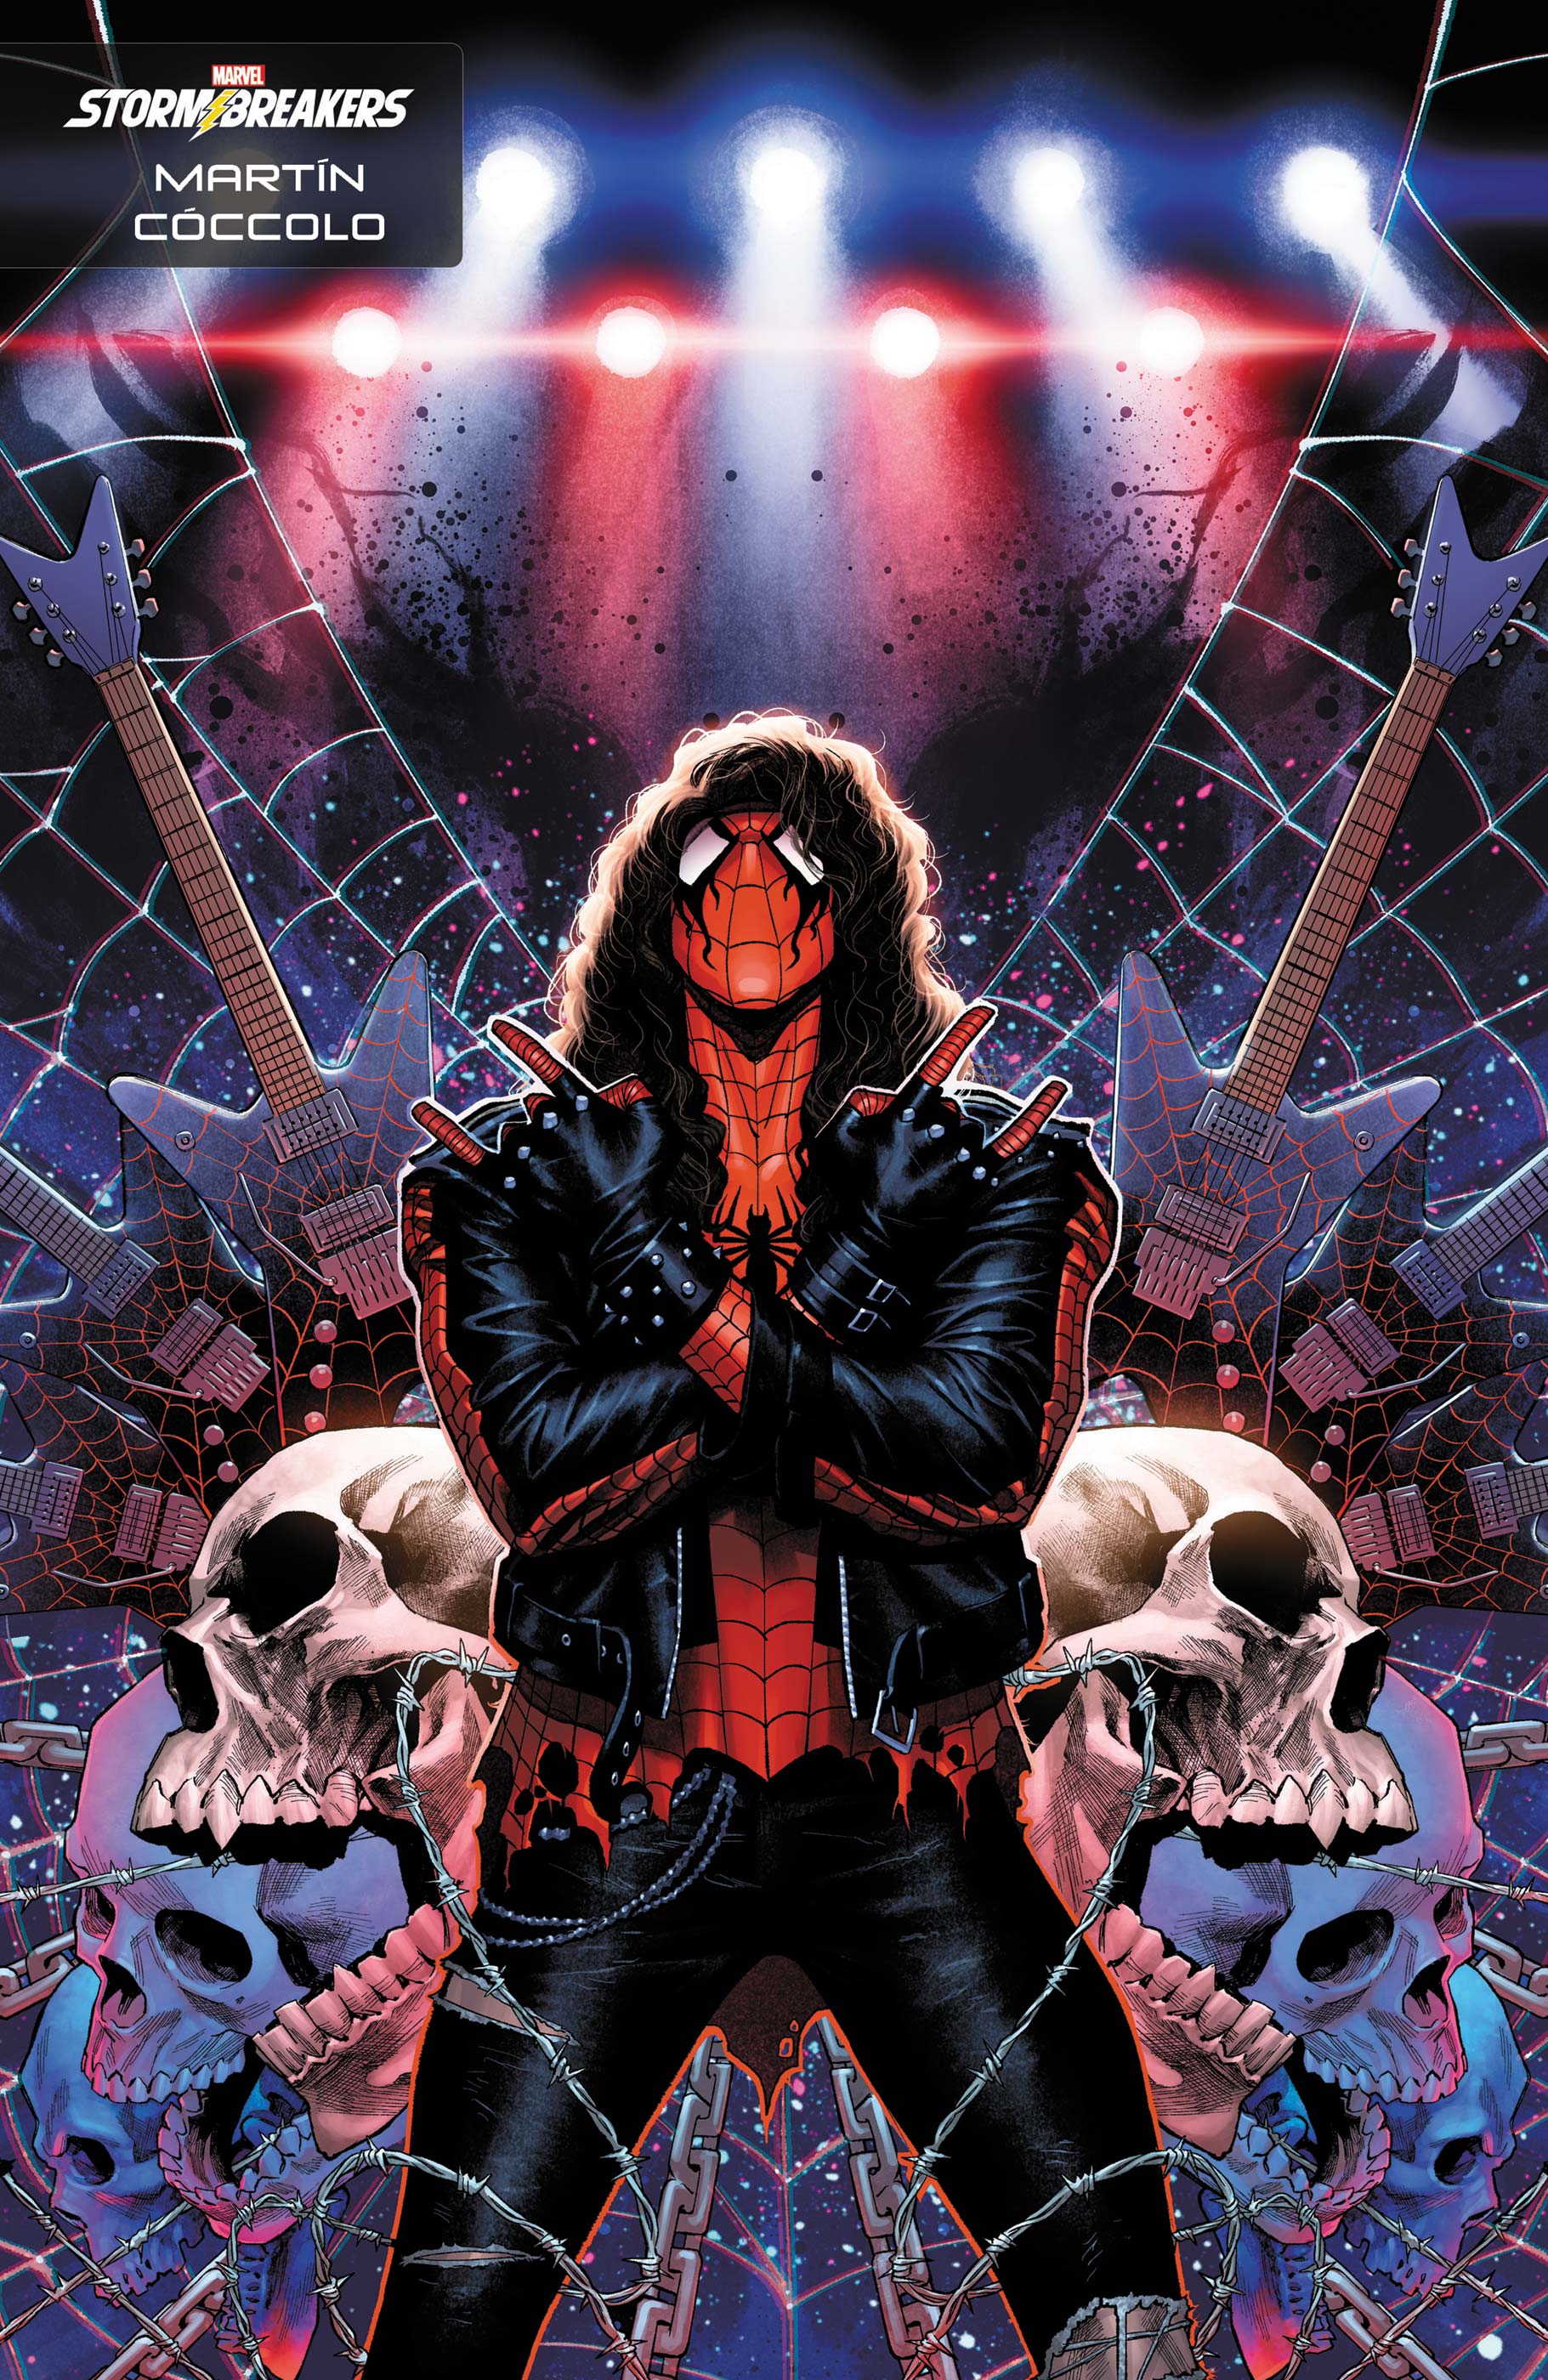 Spider-Boy (2023) #4 (Variant)